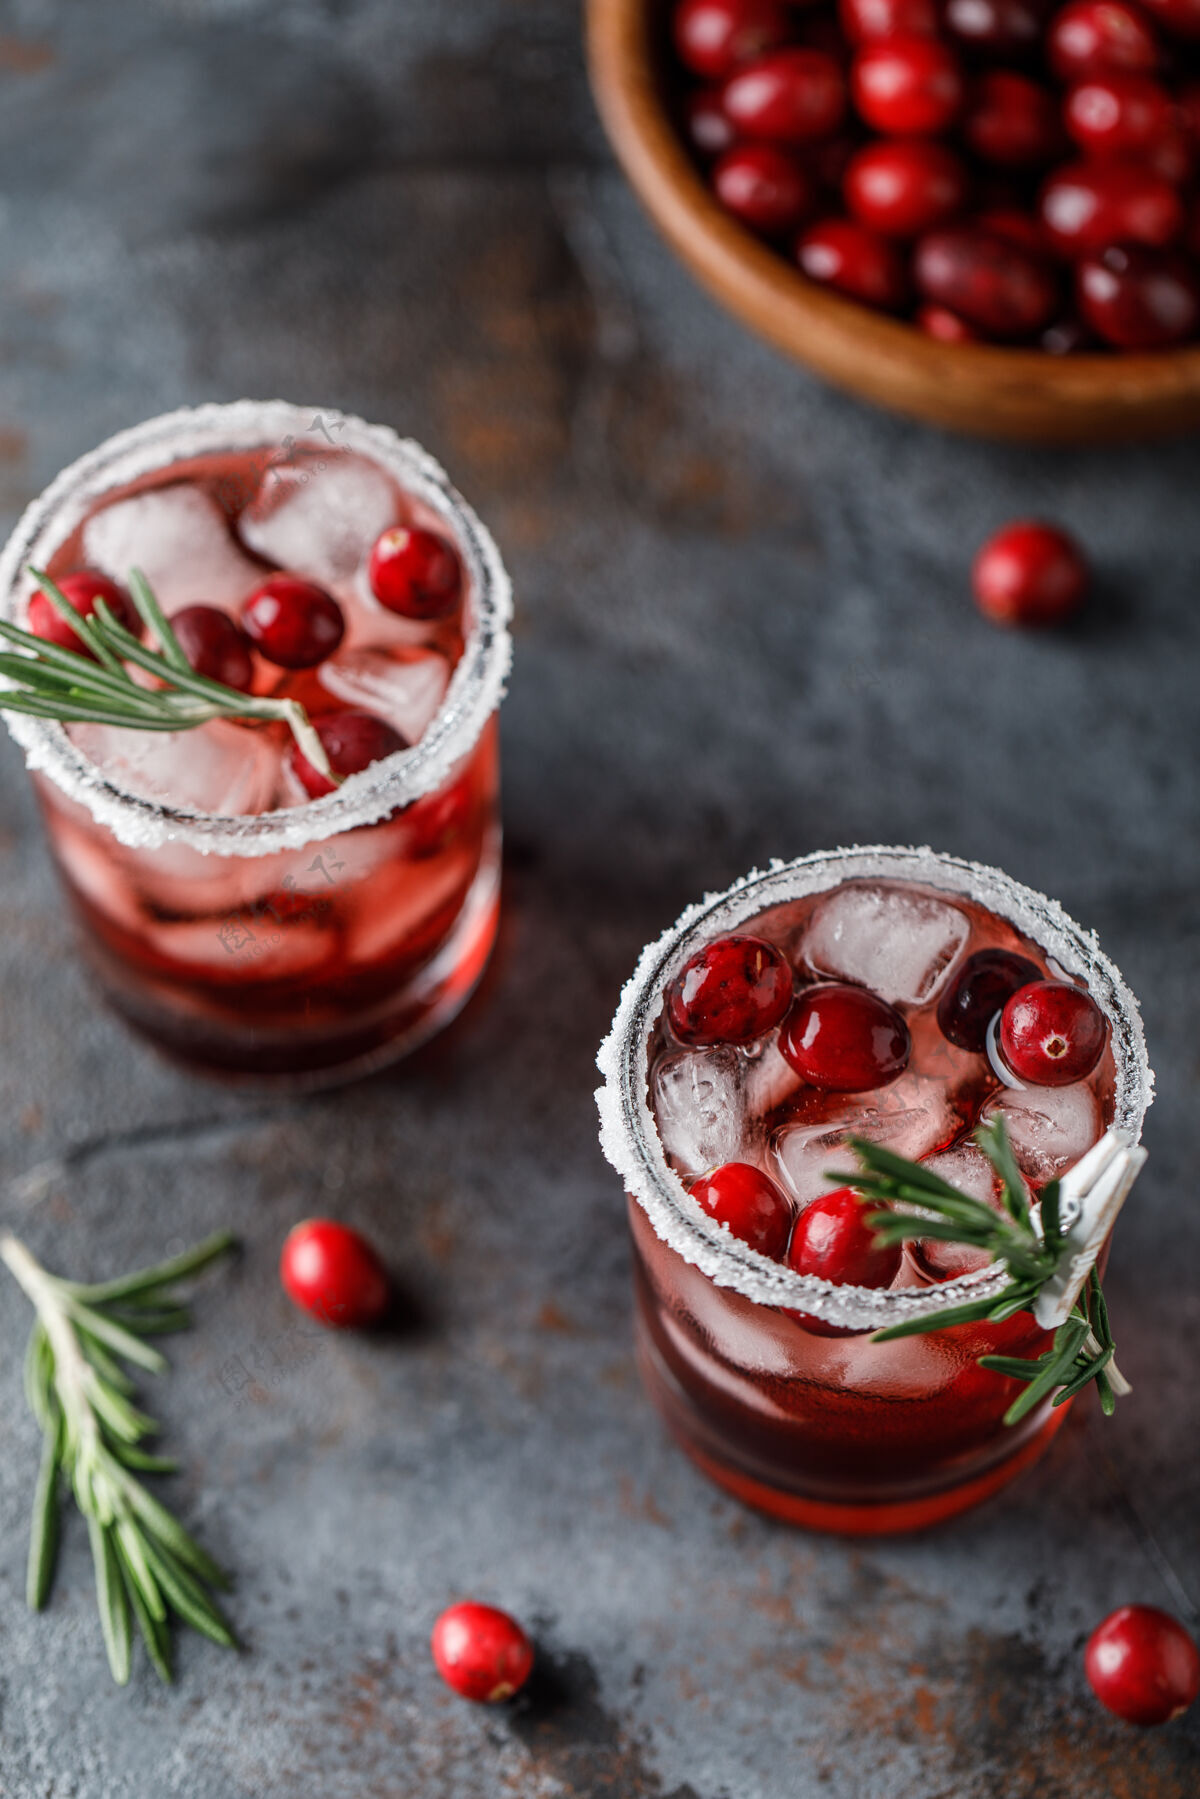 冷红莓鸡尾酒冰圣诞节红莓饮料在玻璃装饰糖和迷迭香冰凉圣诞节